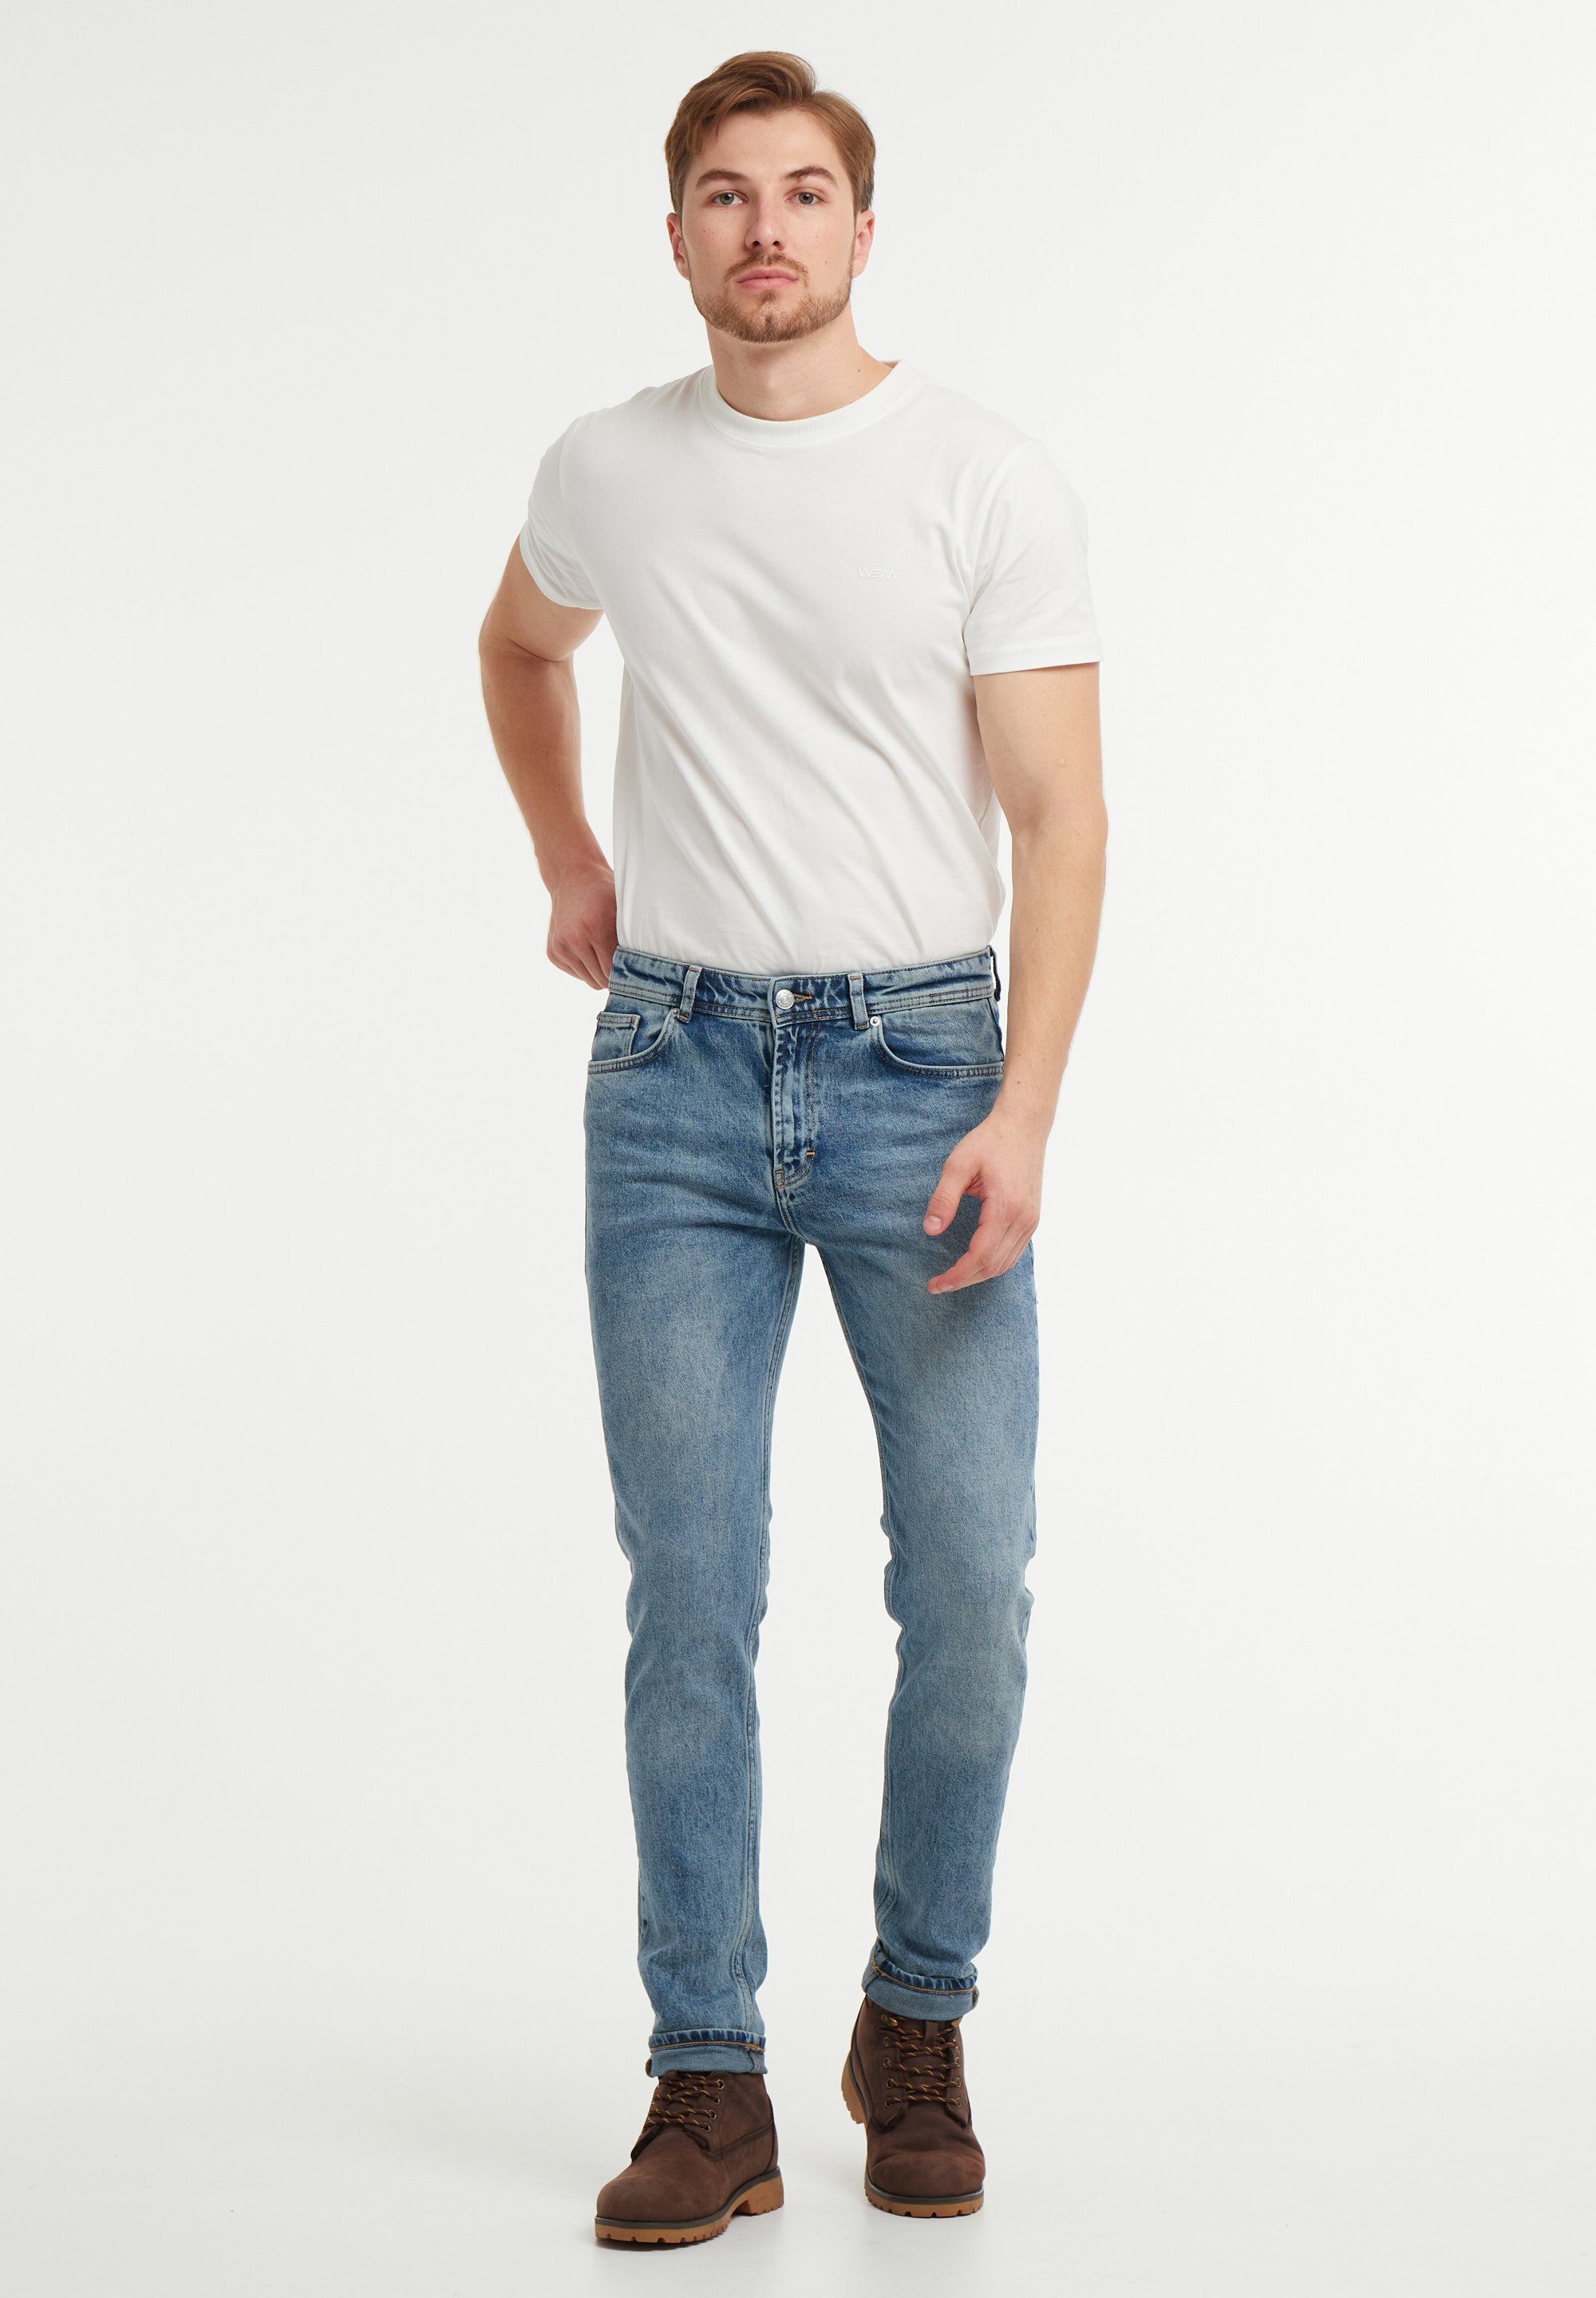 schmaler wem Fit Mittlere unten breiter, Tapered – denim Oben Oscar Bundhöhe: Tapered-fit-Jeans blue